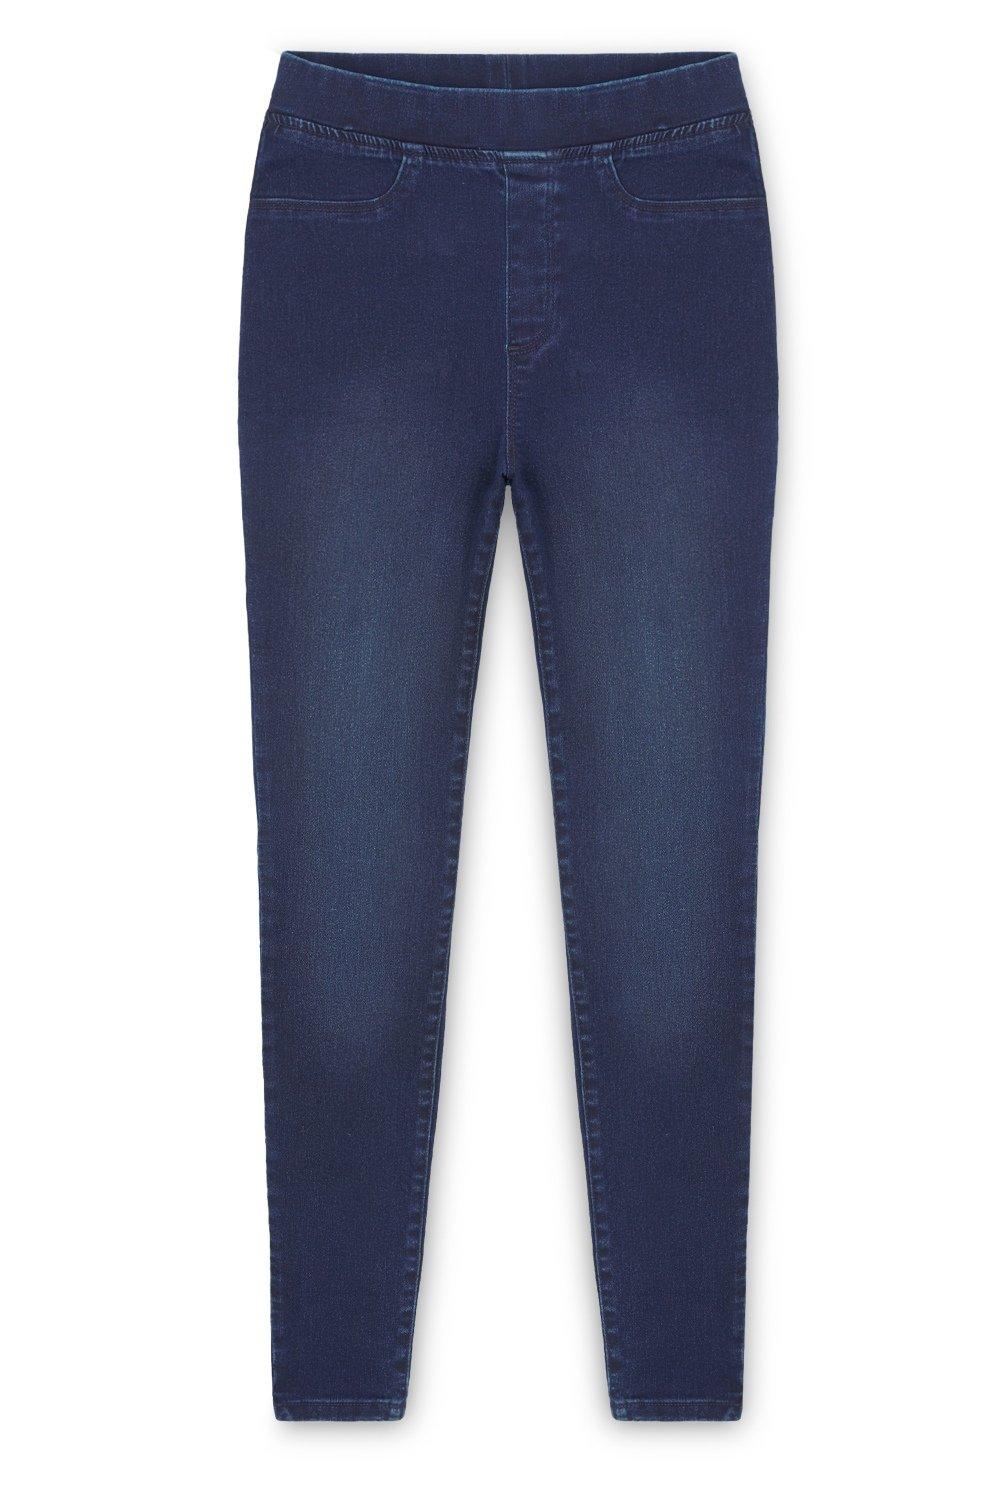 Эластичные джеггинсы с эластичной резинкой на талии CityComfort, синий джинсы для женщин джинсы для мам джинсы с низкой талией женские высокоэластичные стрейчевые джинсы женские джинсы с эффектом потертости